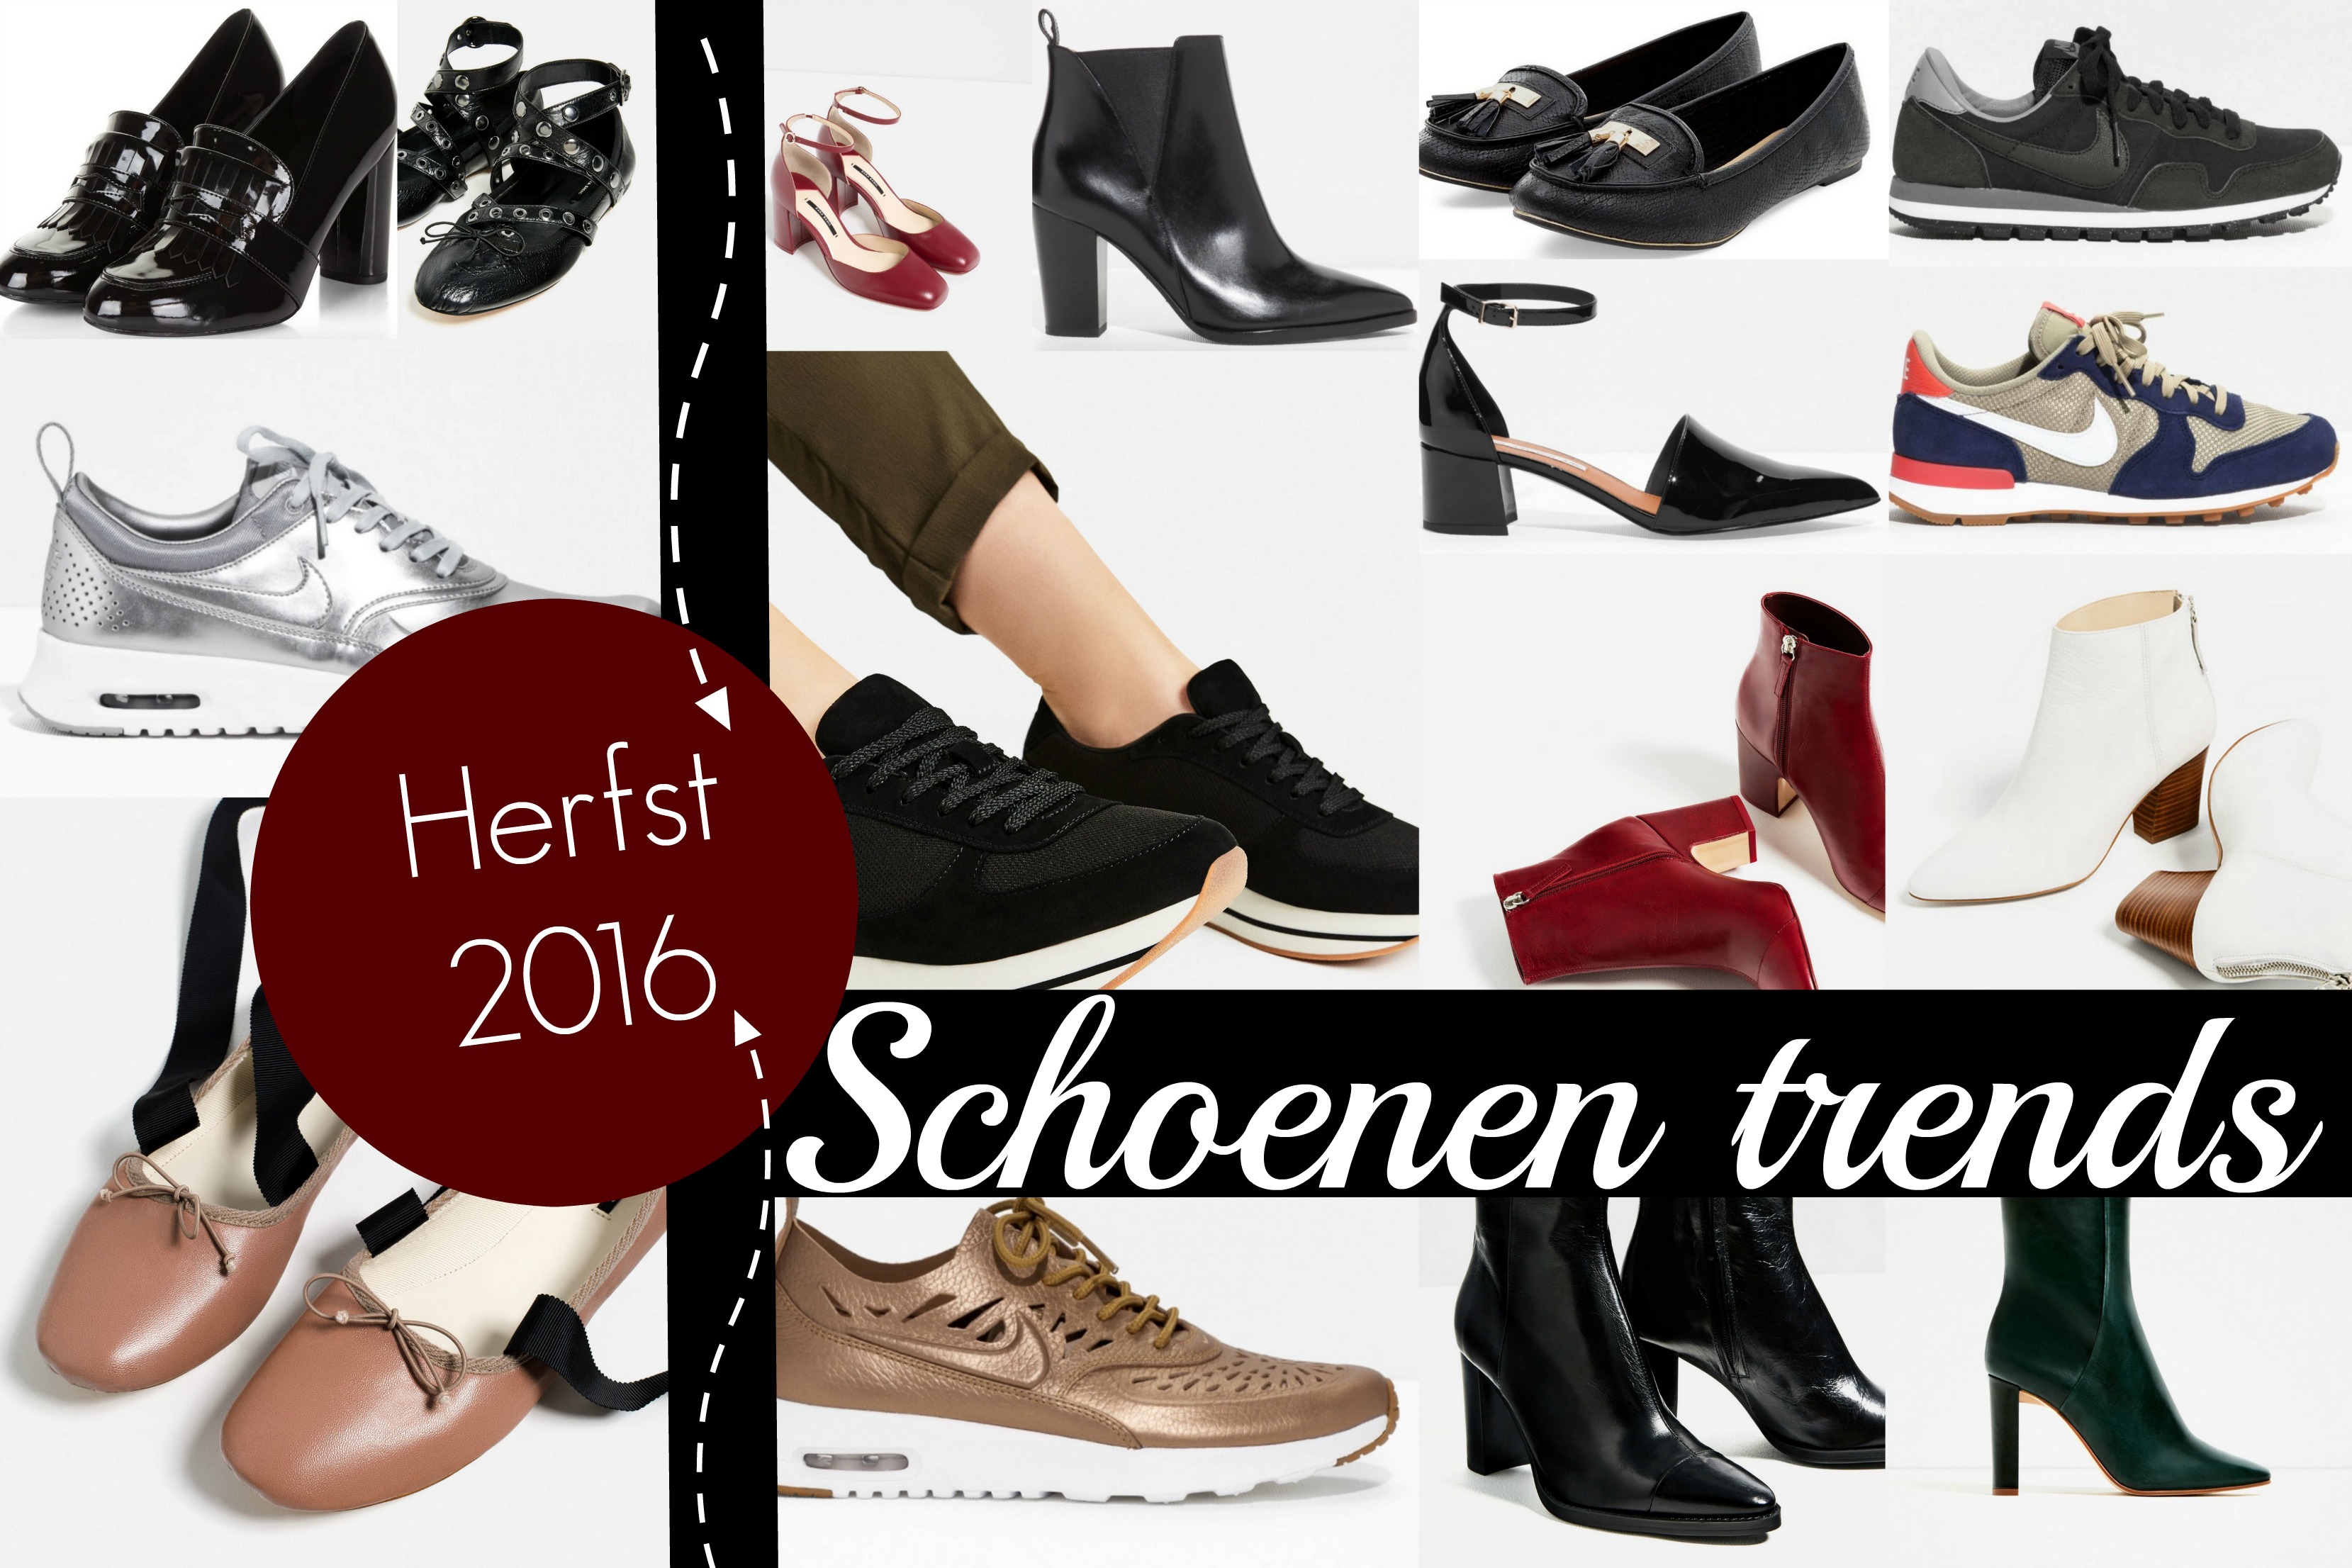 Ga door zaterdag heilig Schoenen trends herfst 2016 - Fashionblog - Proud2bme